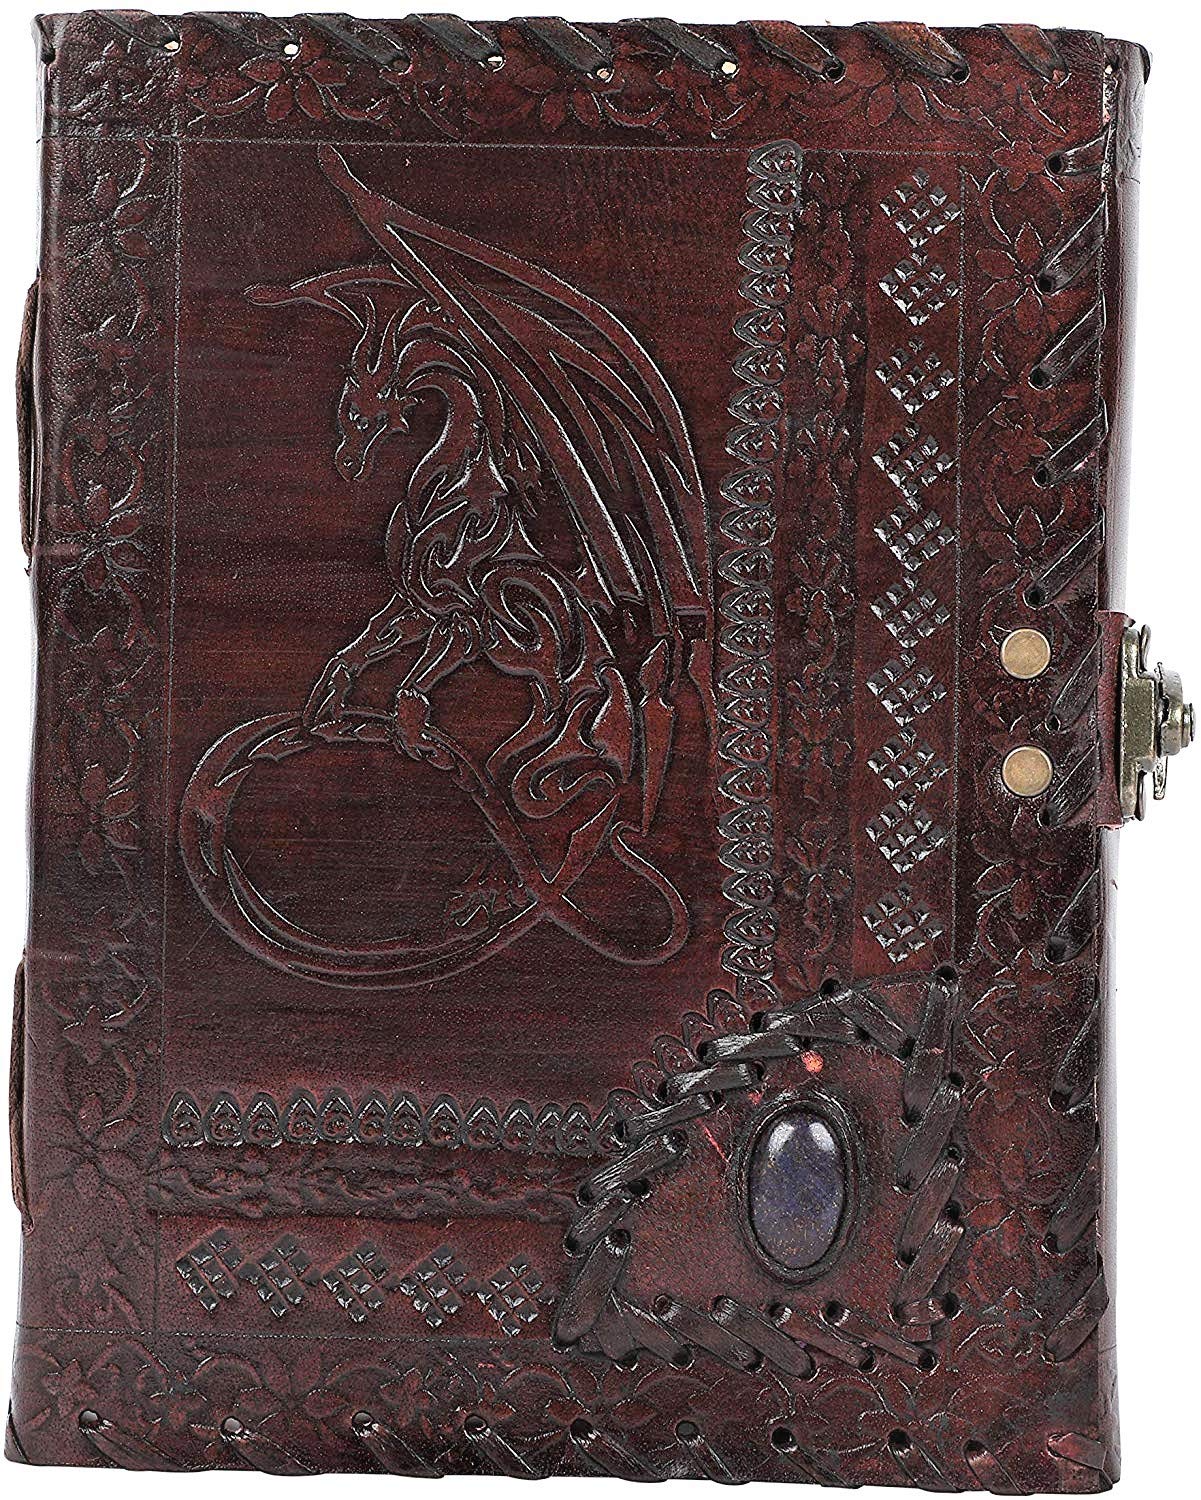 OVERDOSE Dragon with Stone Embossed Journal Notebook Handgemachtes Leder Journal Reisetagebuch Schreib journal Organizer planer Tagebuch Size 6" x 8" inches | 15x20 cm